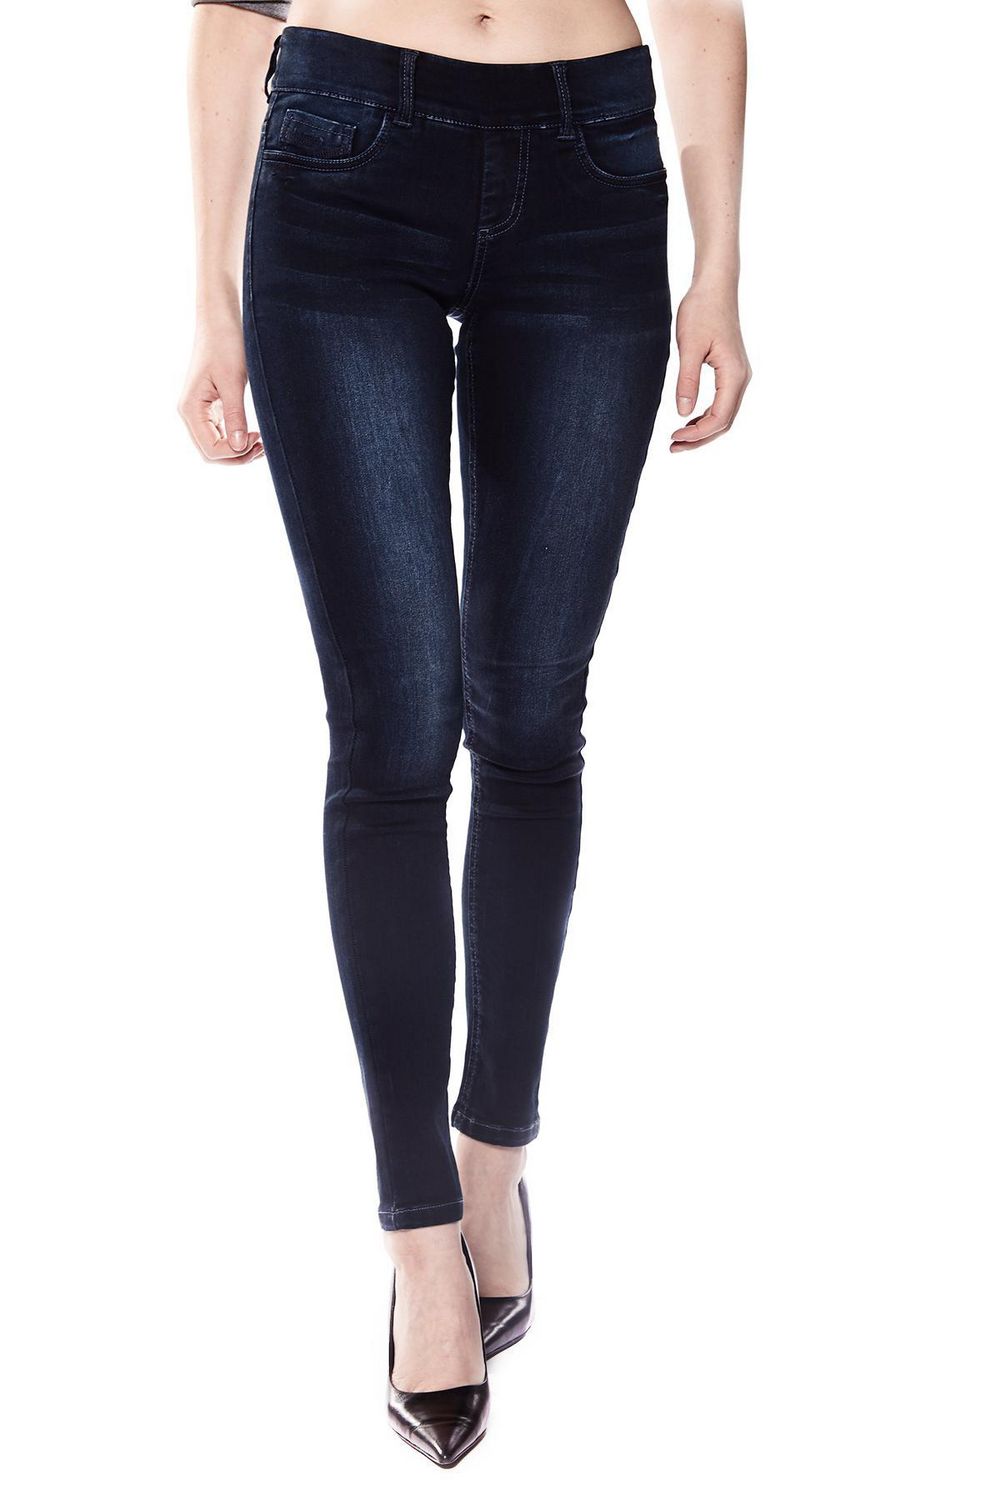 Buy Navy Blue Jeans & Jeggings for Women by Runwayin Online